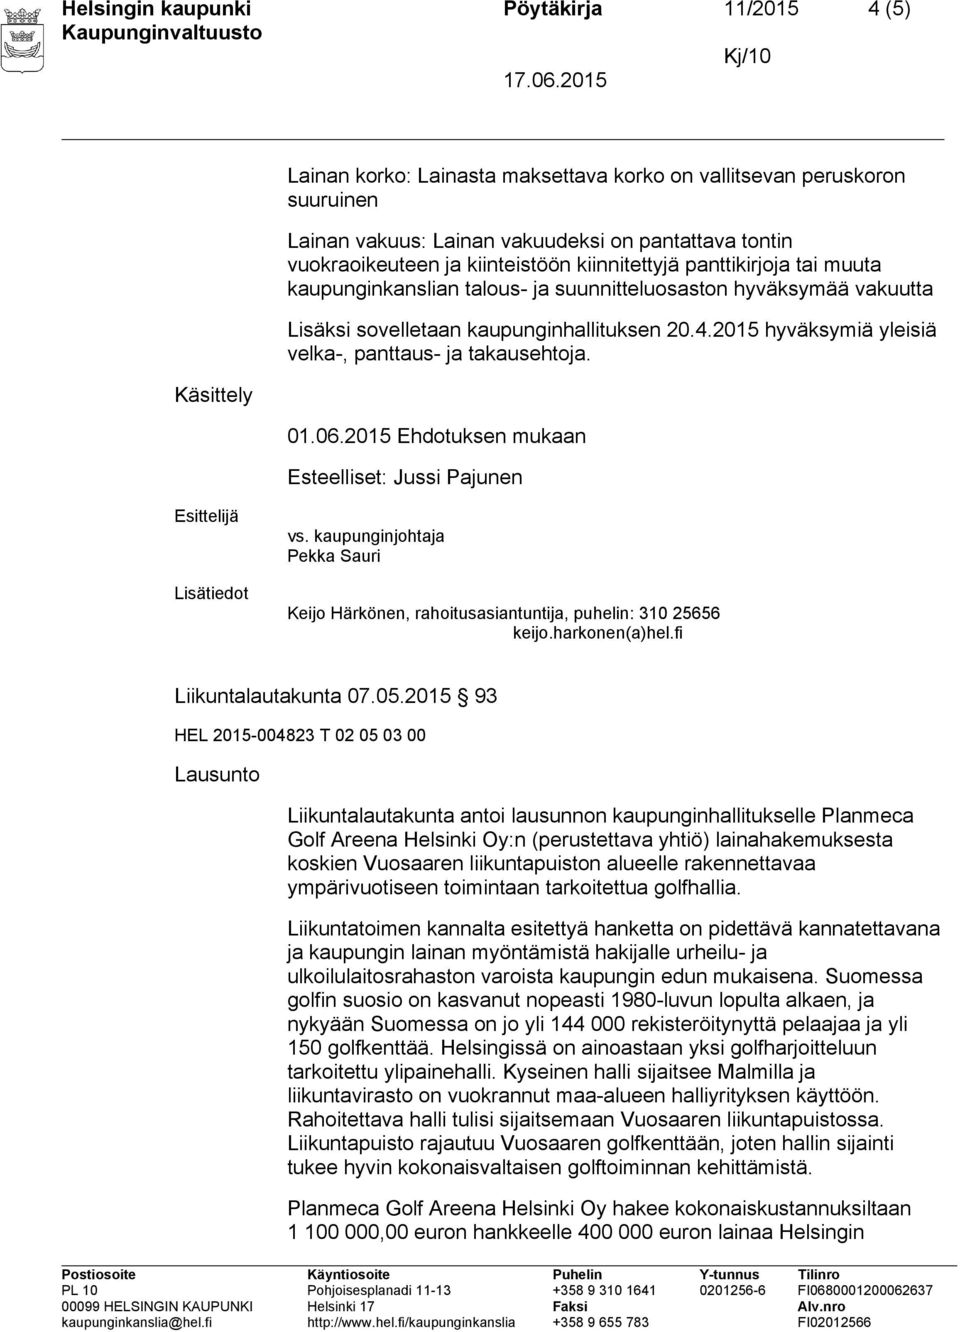 2015 hyväksymiä yleisiä velka-, panttaus- ja takausehtoja. 01.06.2015 Ehdotuksen mukaan Esteelliset: Jussi Pajunen vs. kaupunginjohtaja Pekka Sauri Liikuntalautakunta 07.05.